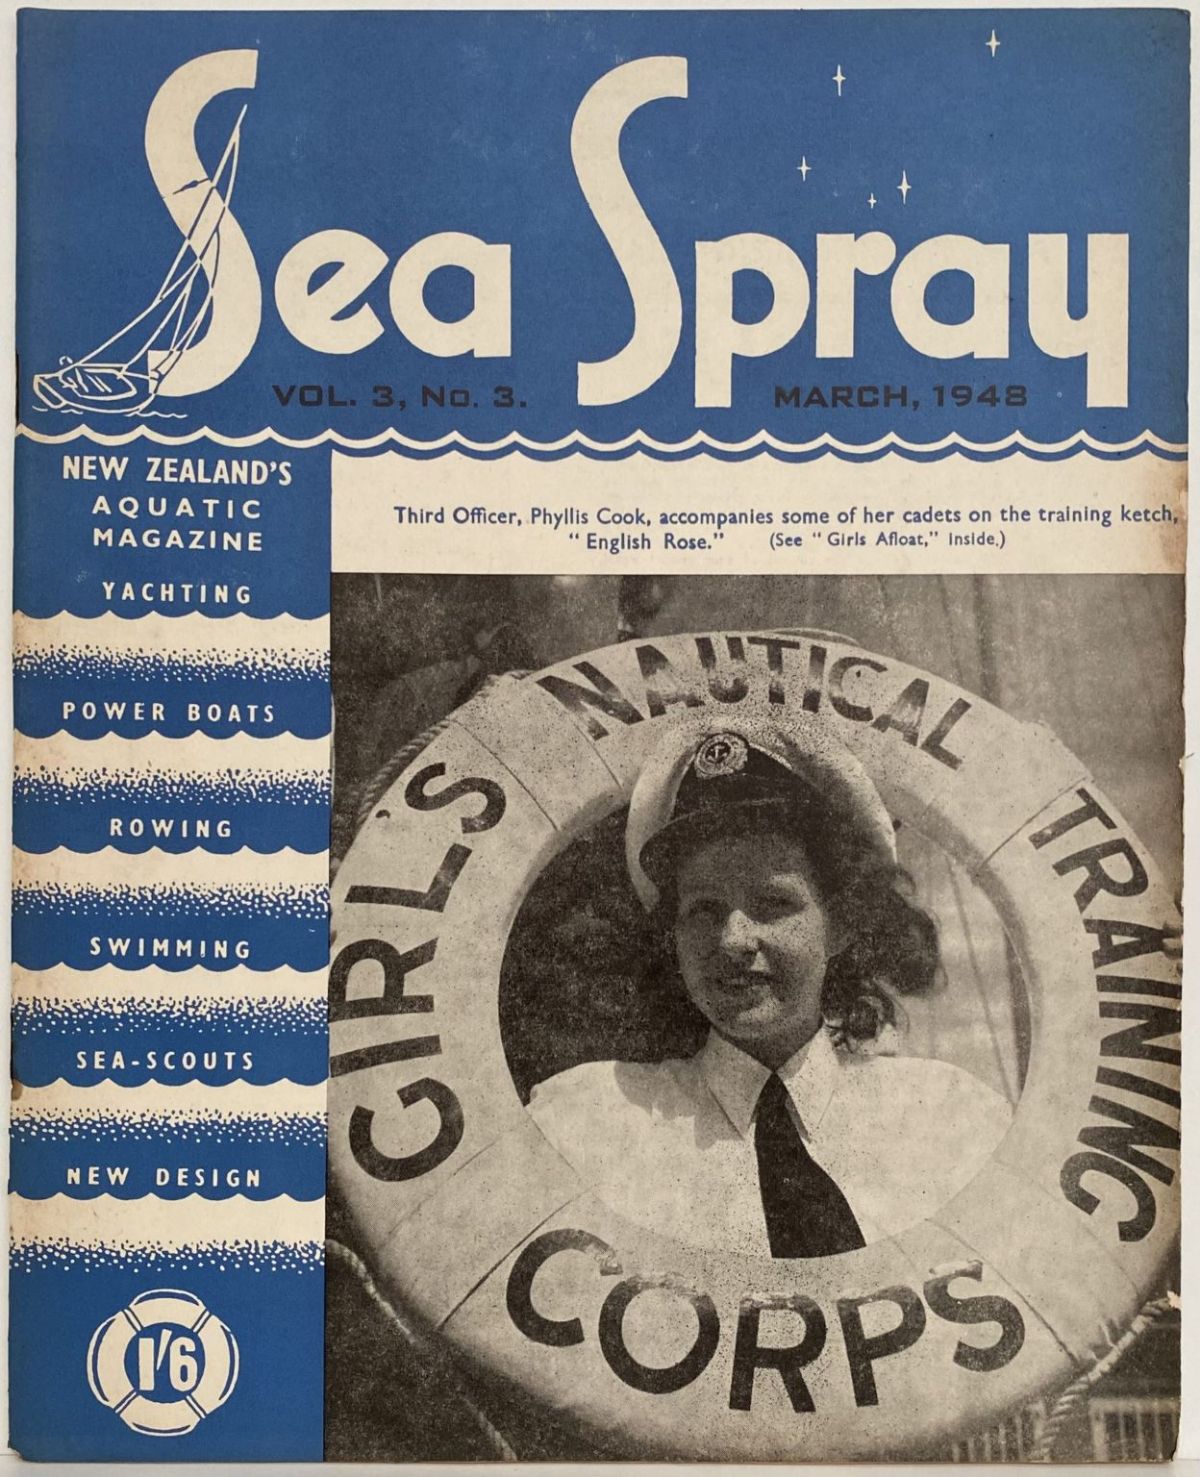 VINTAGE MAGAZINE: Sea Spray - Vol. 3, No. 3 - March 1948